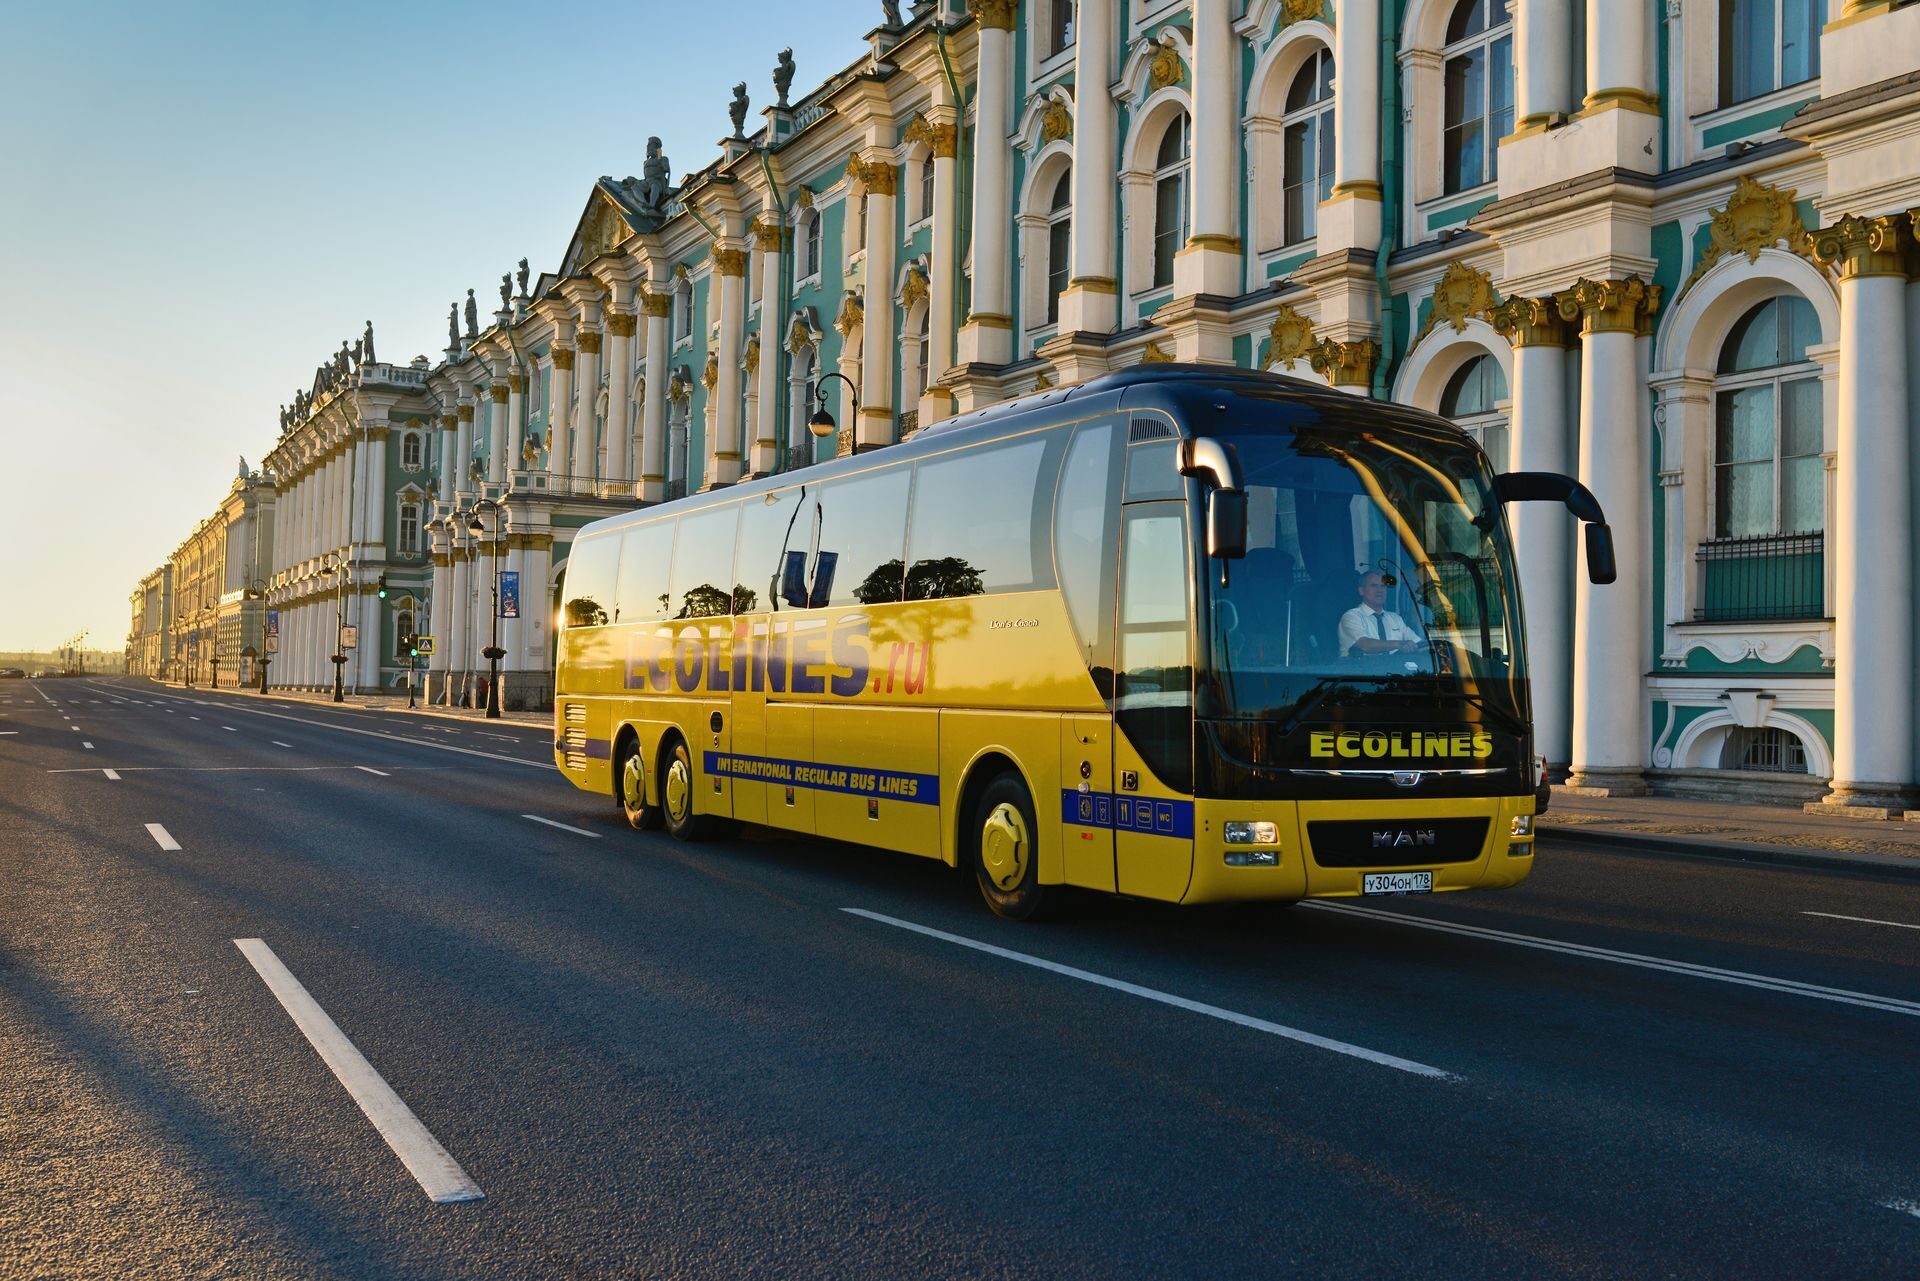 Автобус Эколайн Санкт-Петербург. Перевозчик:Ecolines. Эколайнс автобус. Эколайн автобусы Москва Санкт-Петербург. Экскурсионные автобусы в санкт петербурге